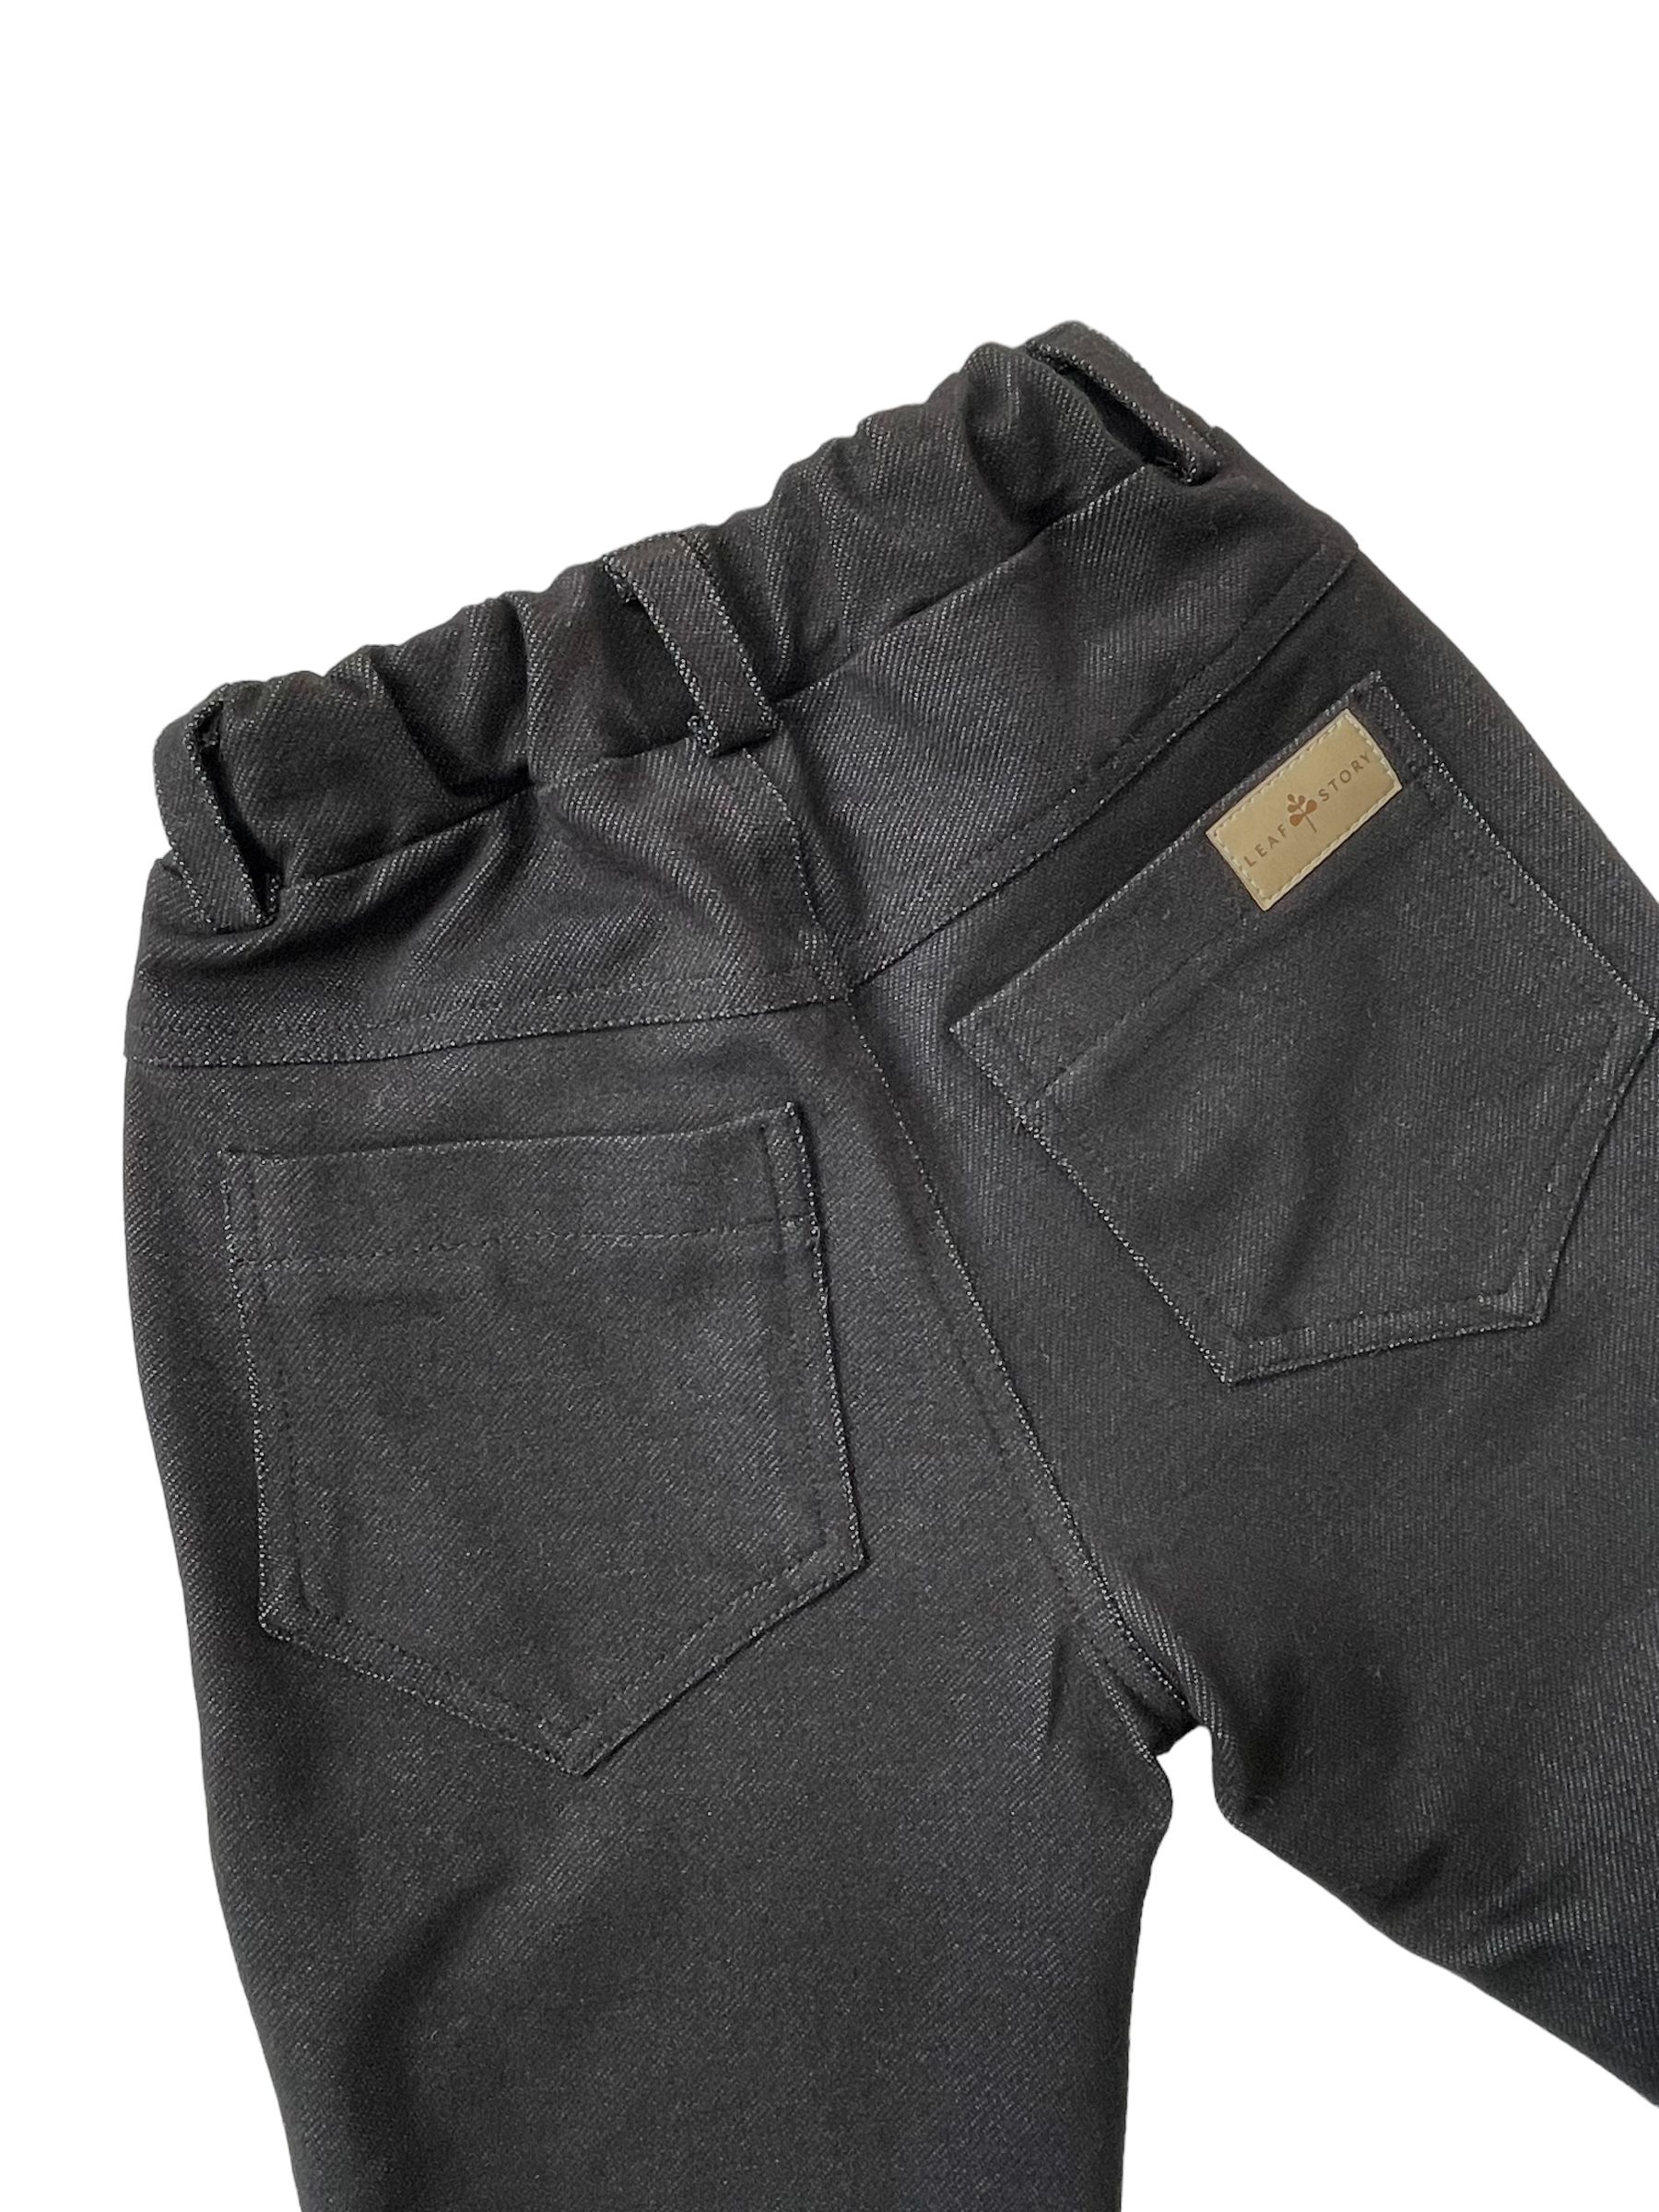 Spodnie z dzianiny jeansowej - czarne